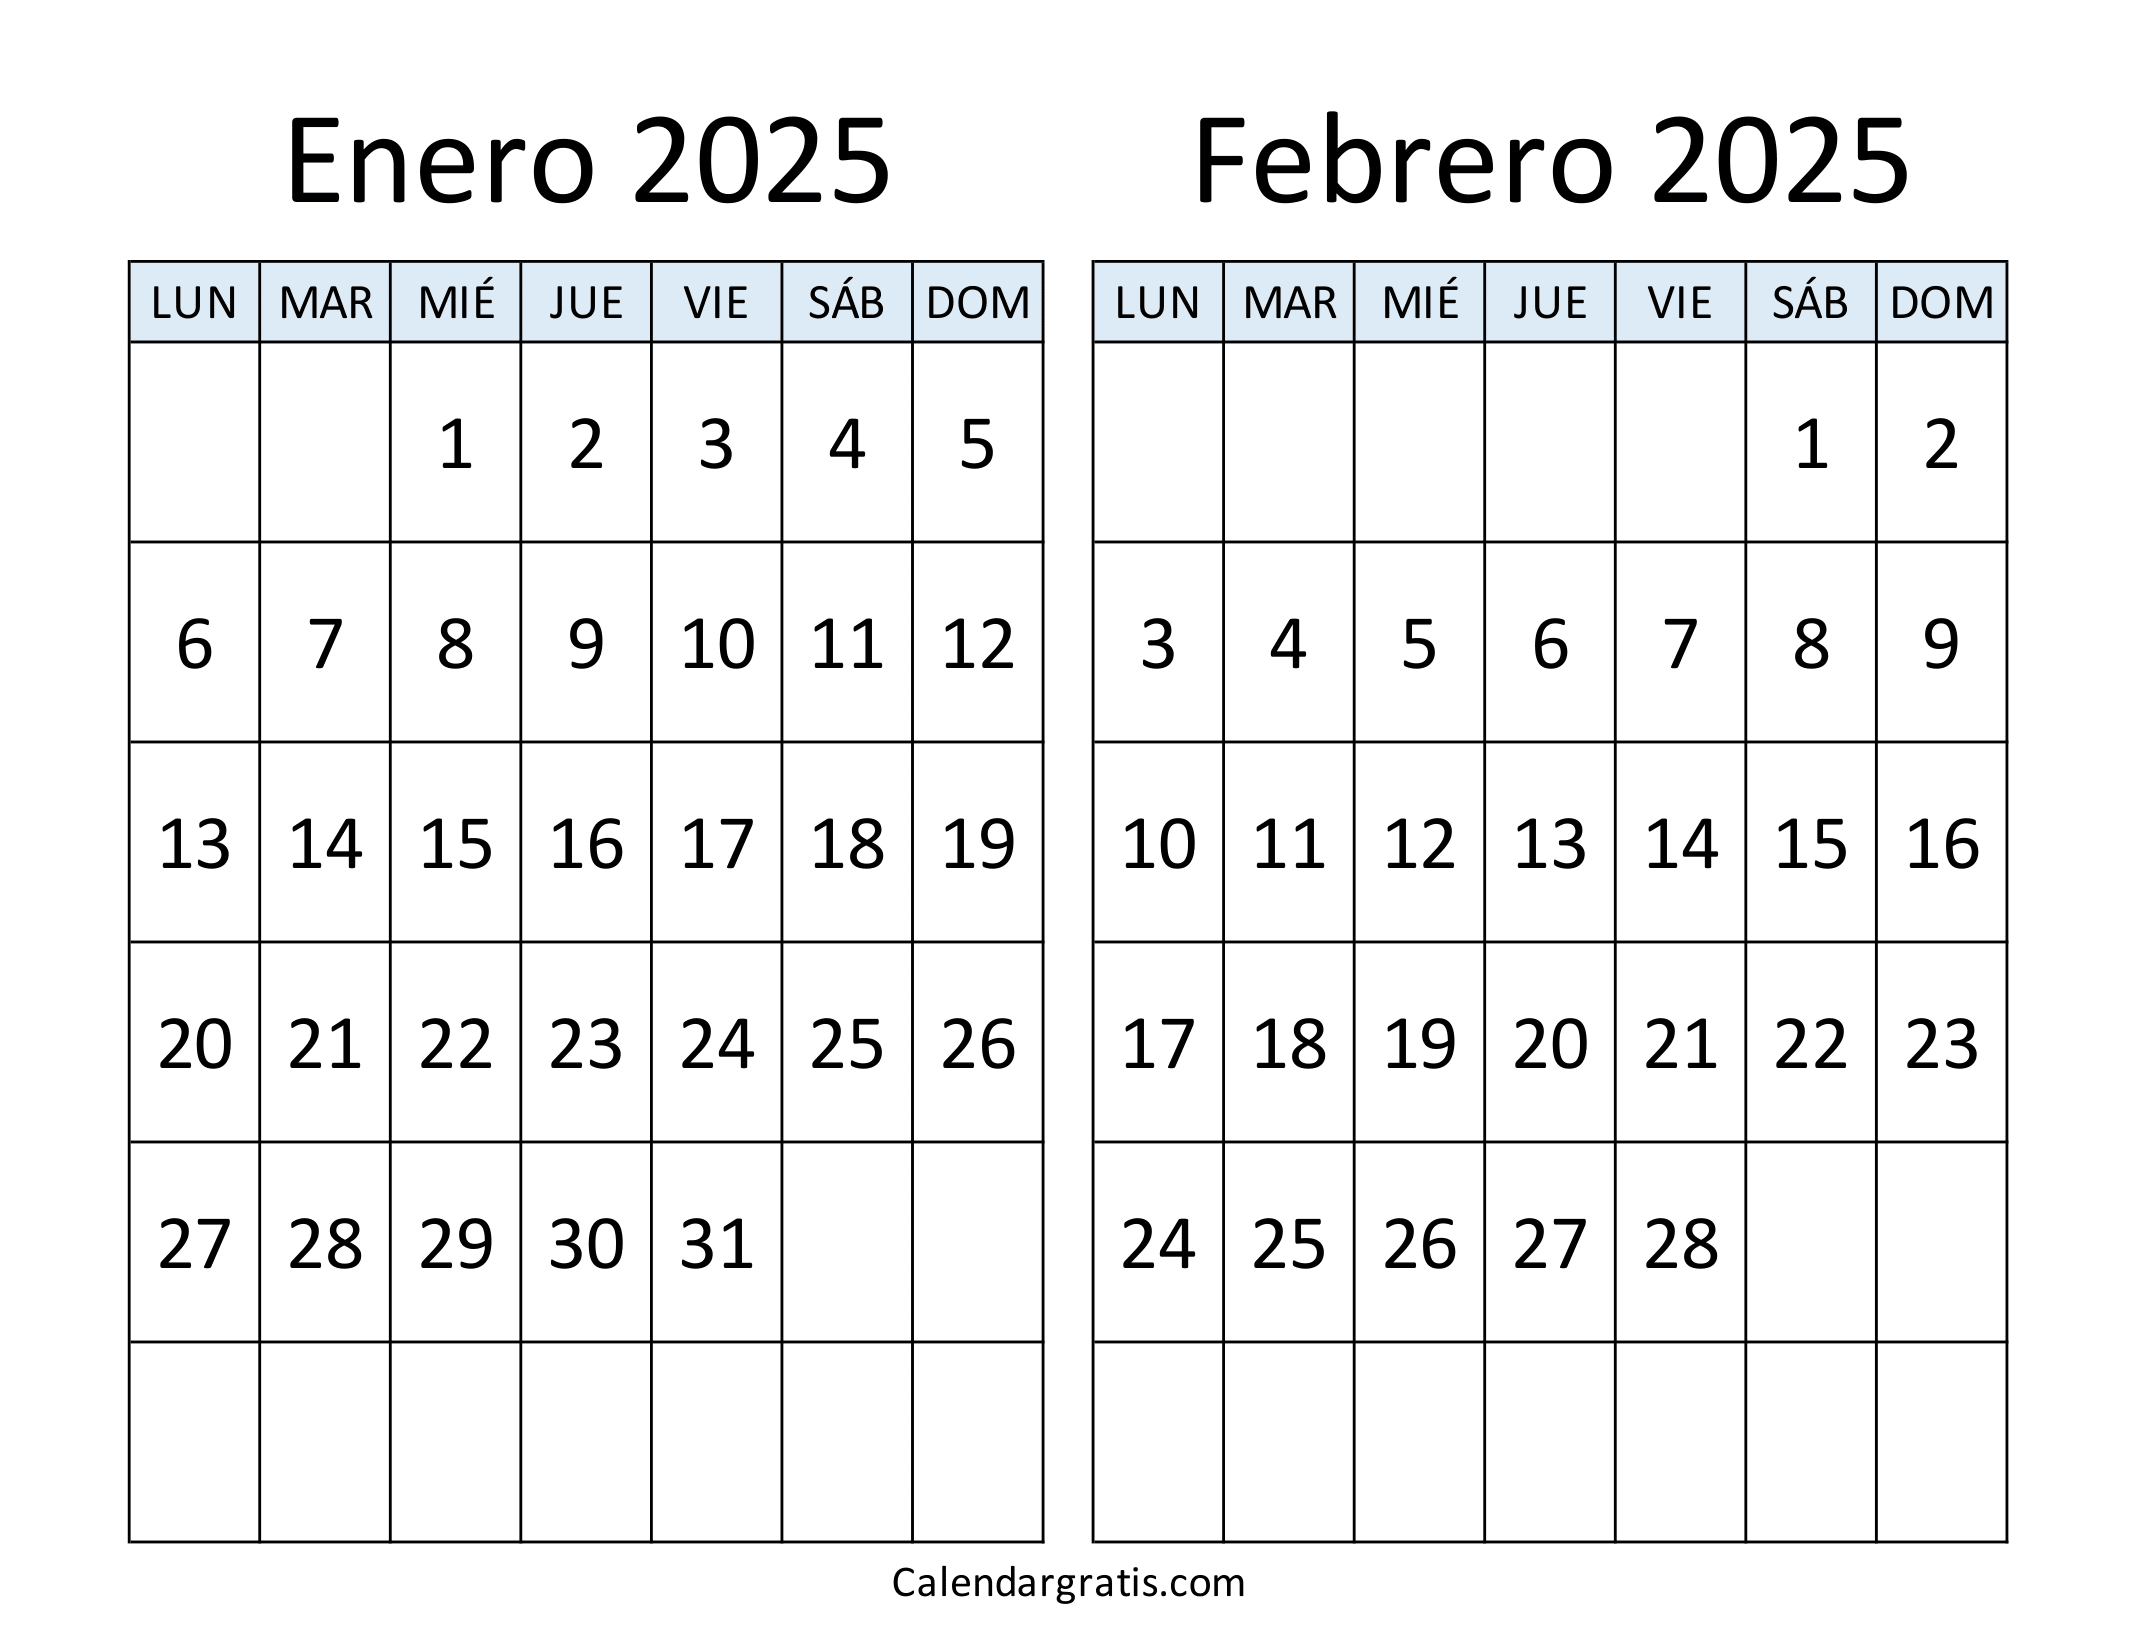 Enero febrero 2025 calendario